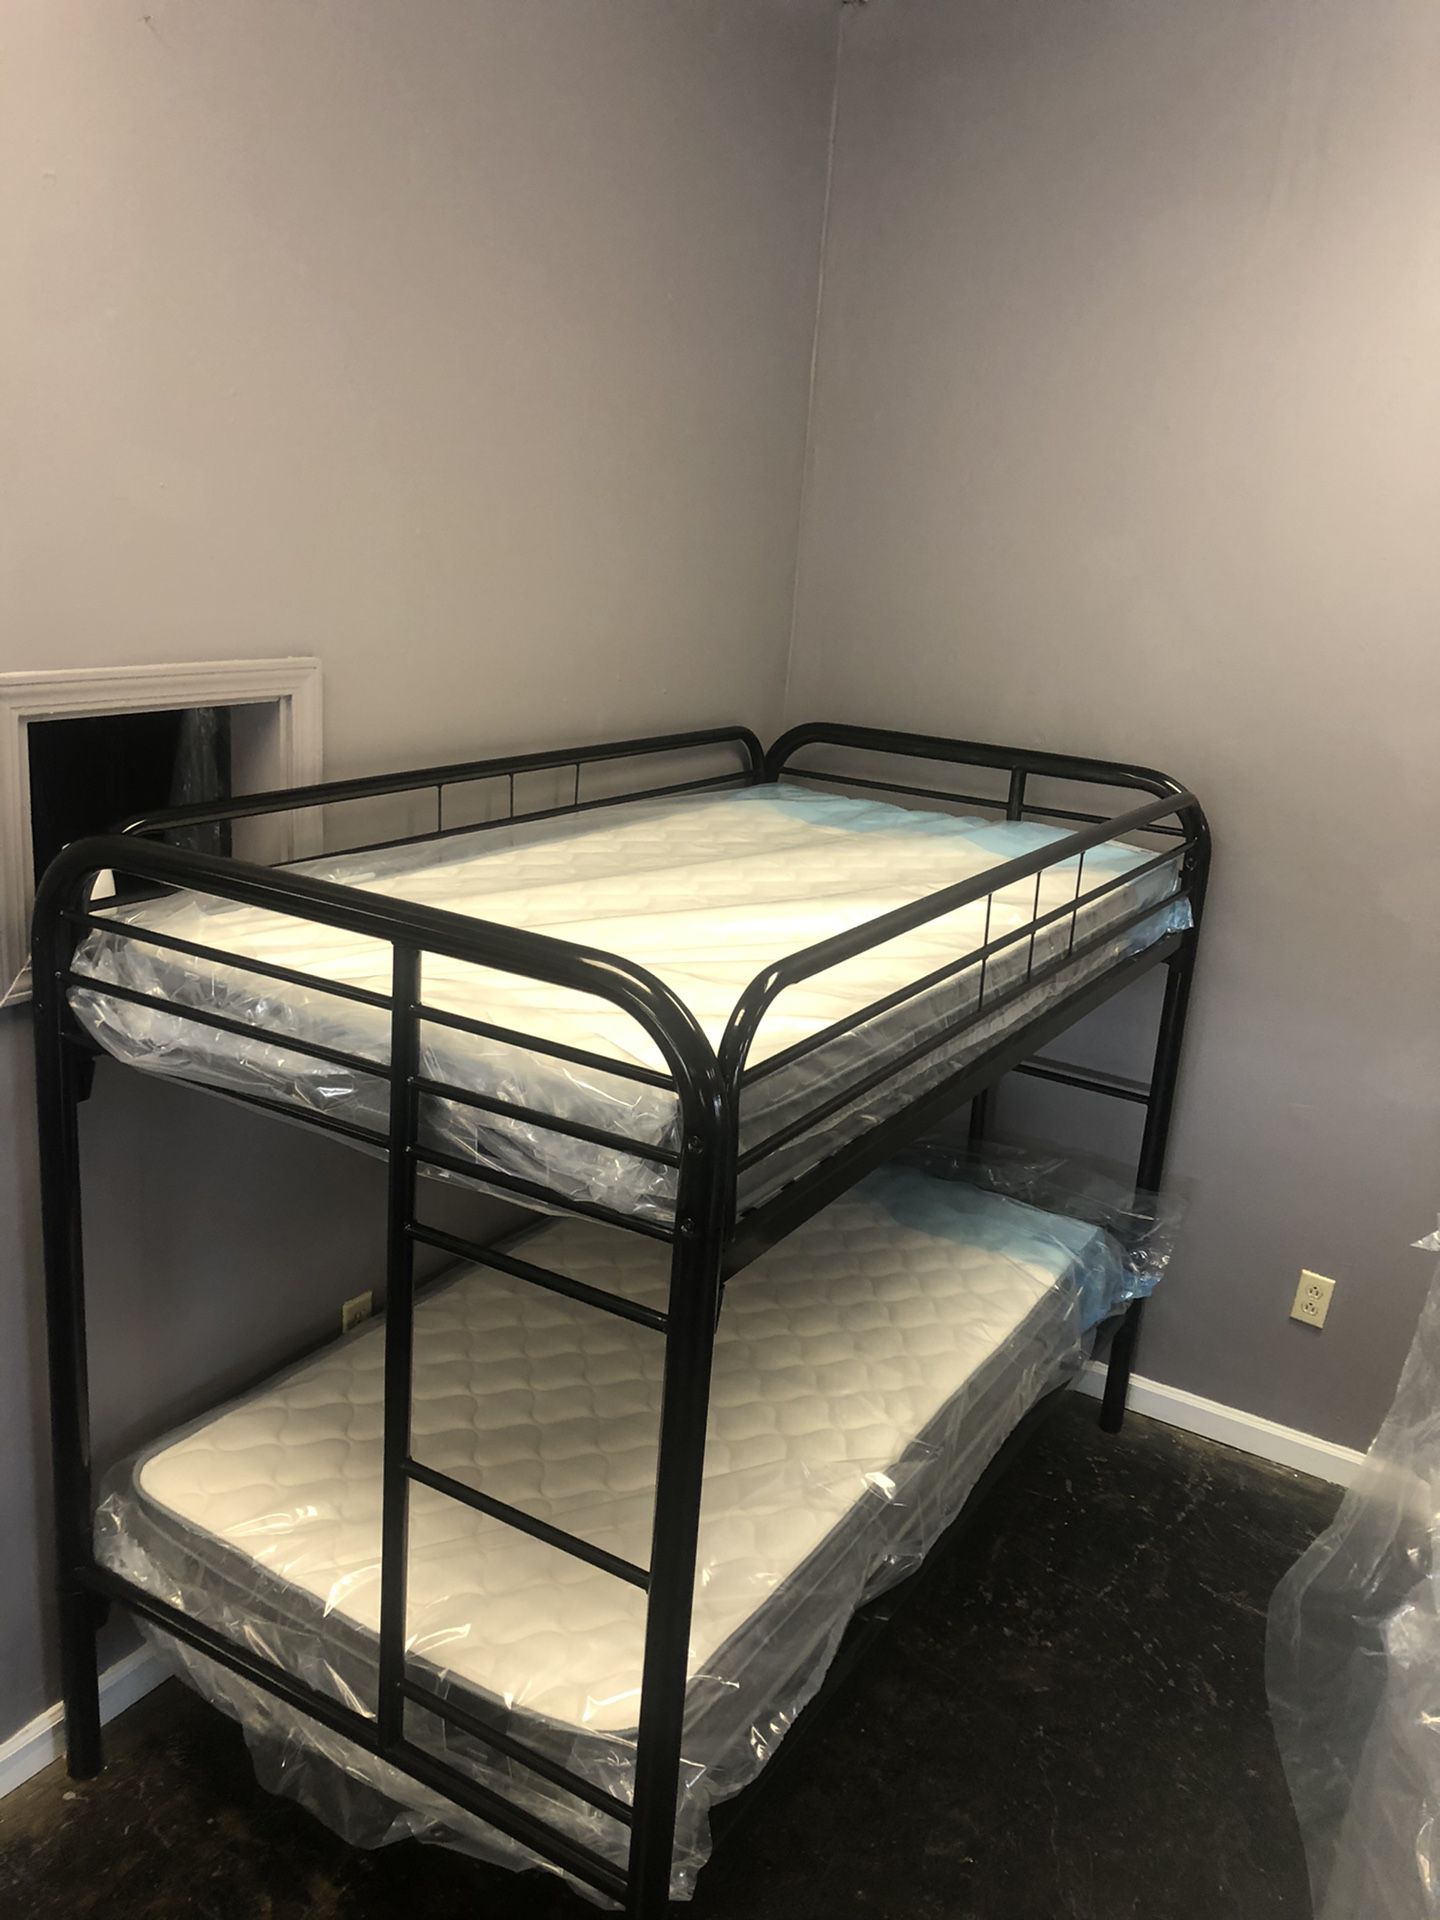 Bunk Bed + Mattress $40 D0WN or $550 Cash